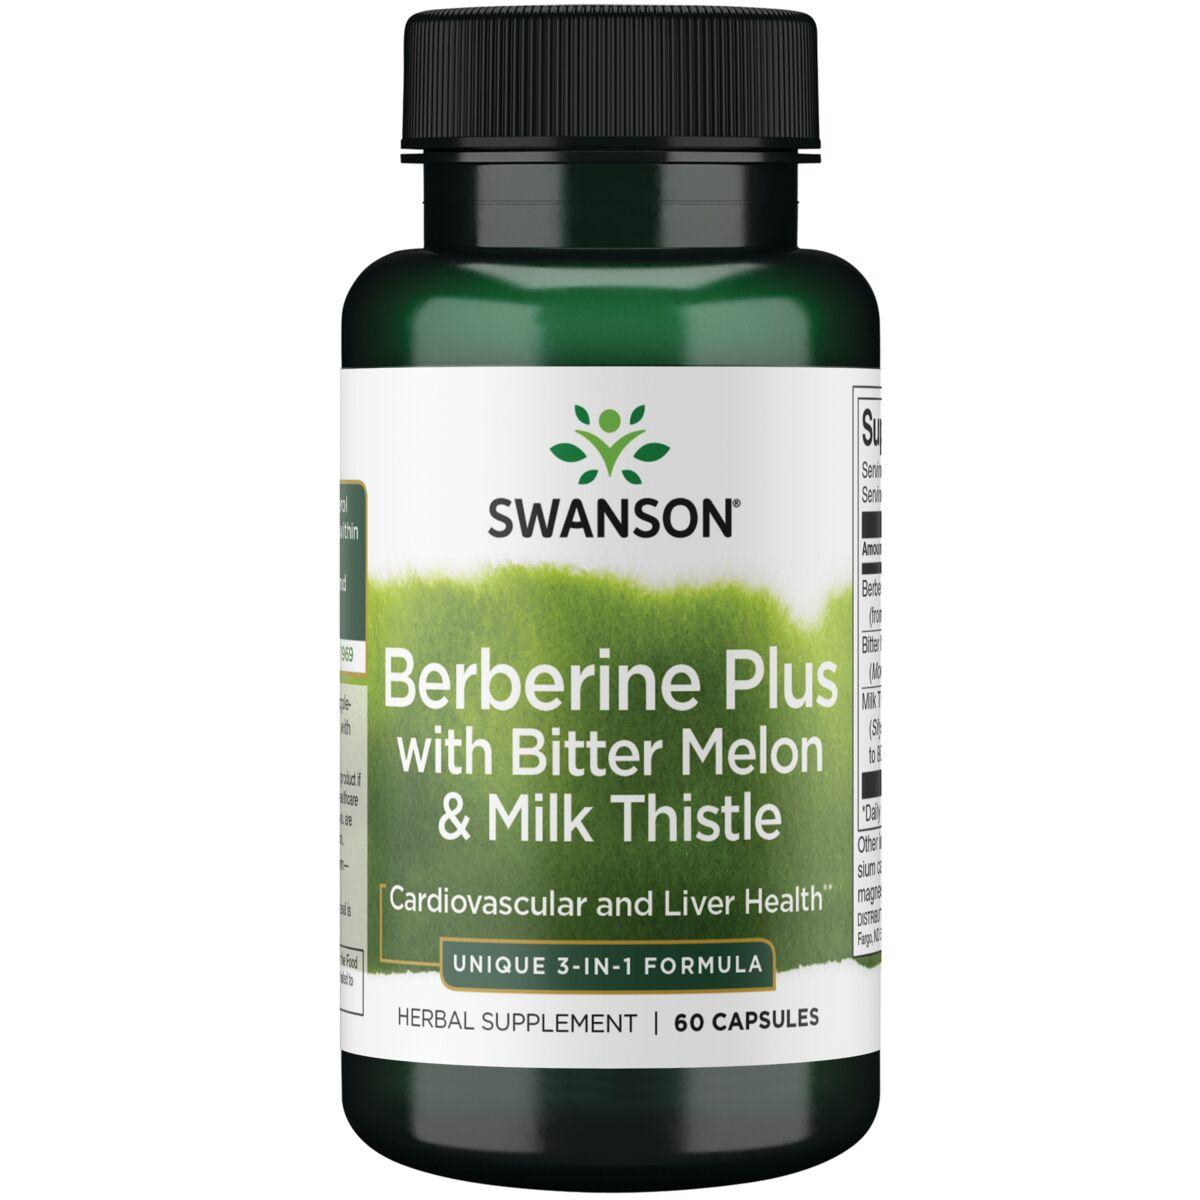 Swanson Premium Berberine Plus with Bitter Melon & Milk Thistle - 3-in-1 Formula Vitamin 60 Caps